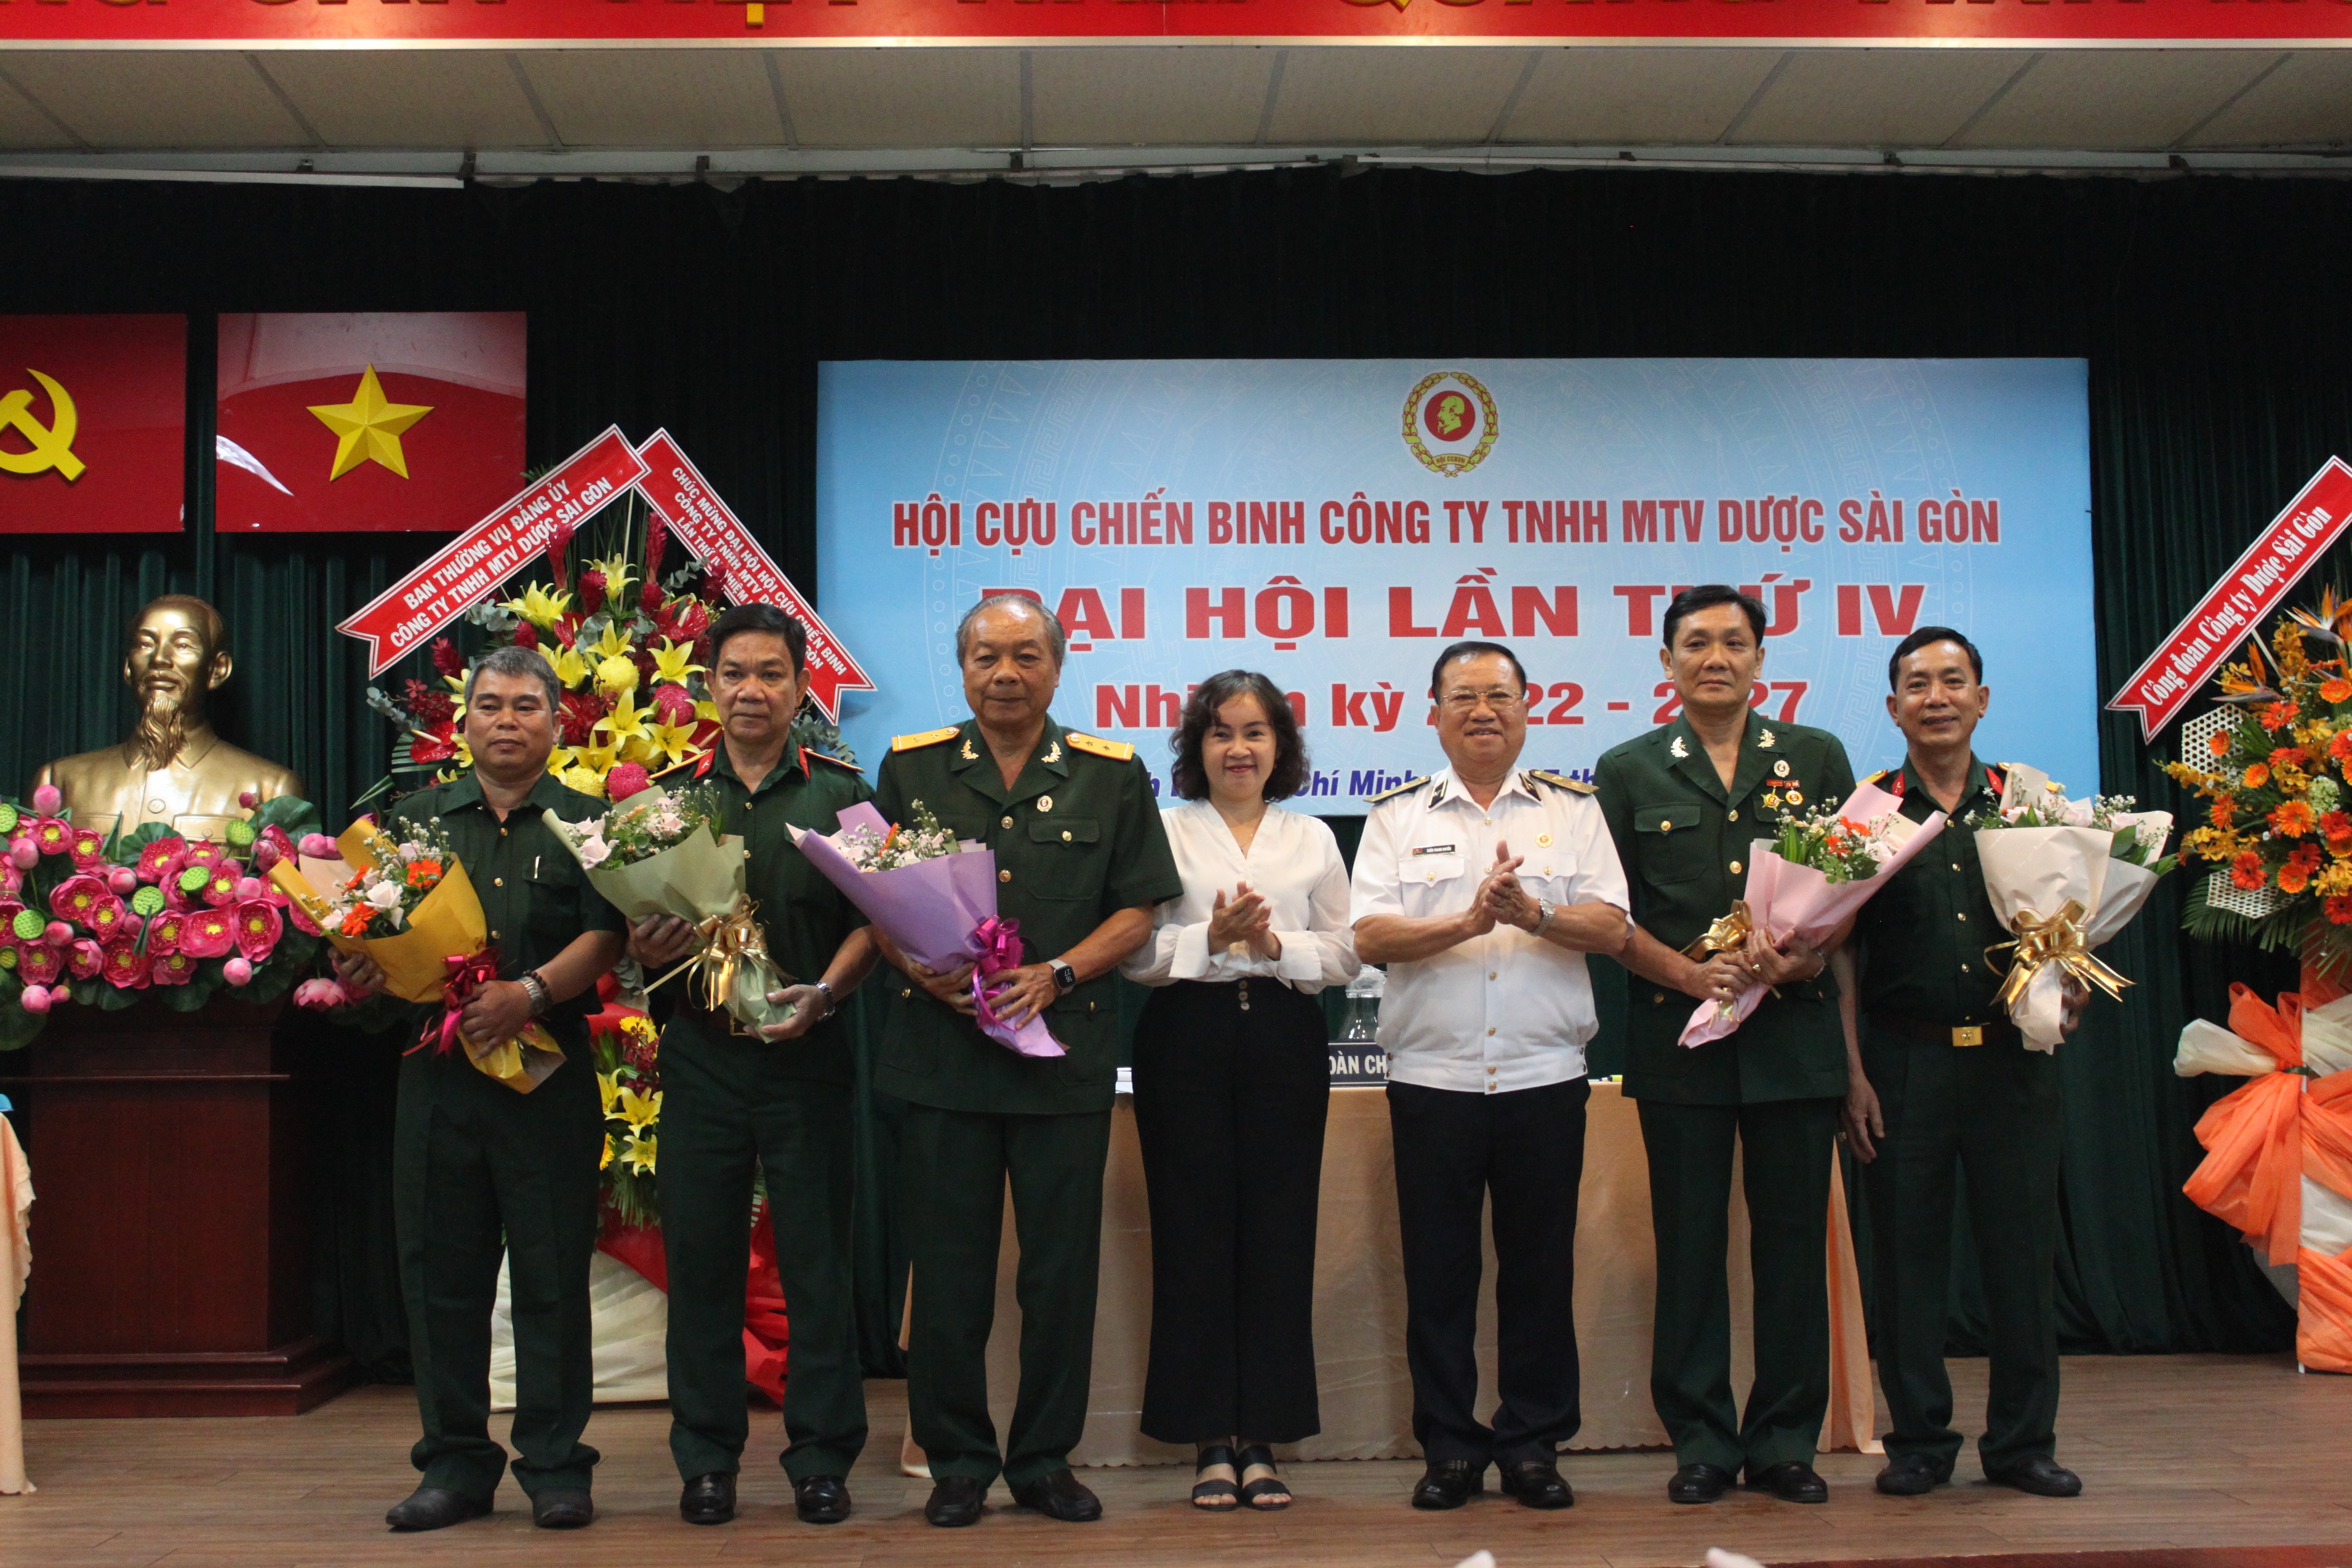 Đại hội Hội cựu chiến binh Công ty TNHH MTV Dược Sài Gòn  lần thứ IV nhiệm kỳ 2022 - 2027